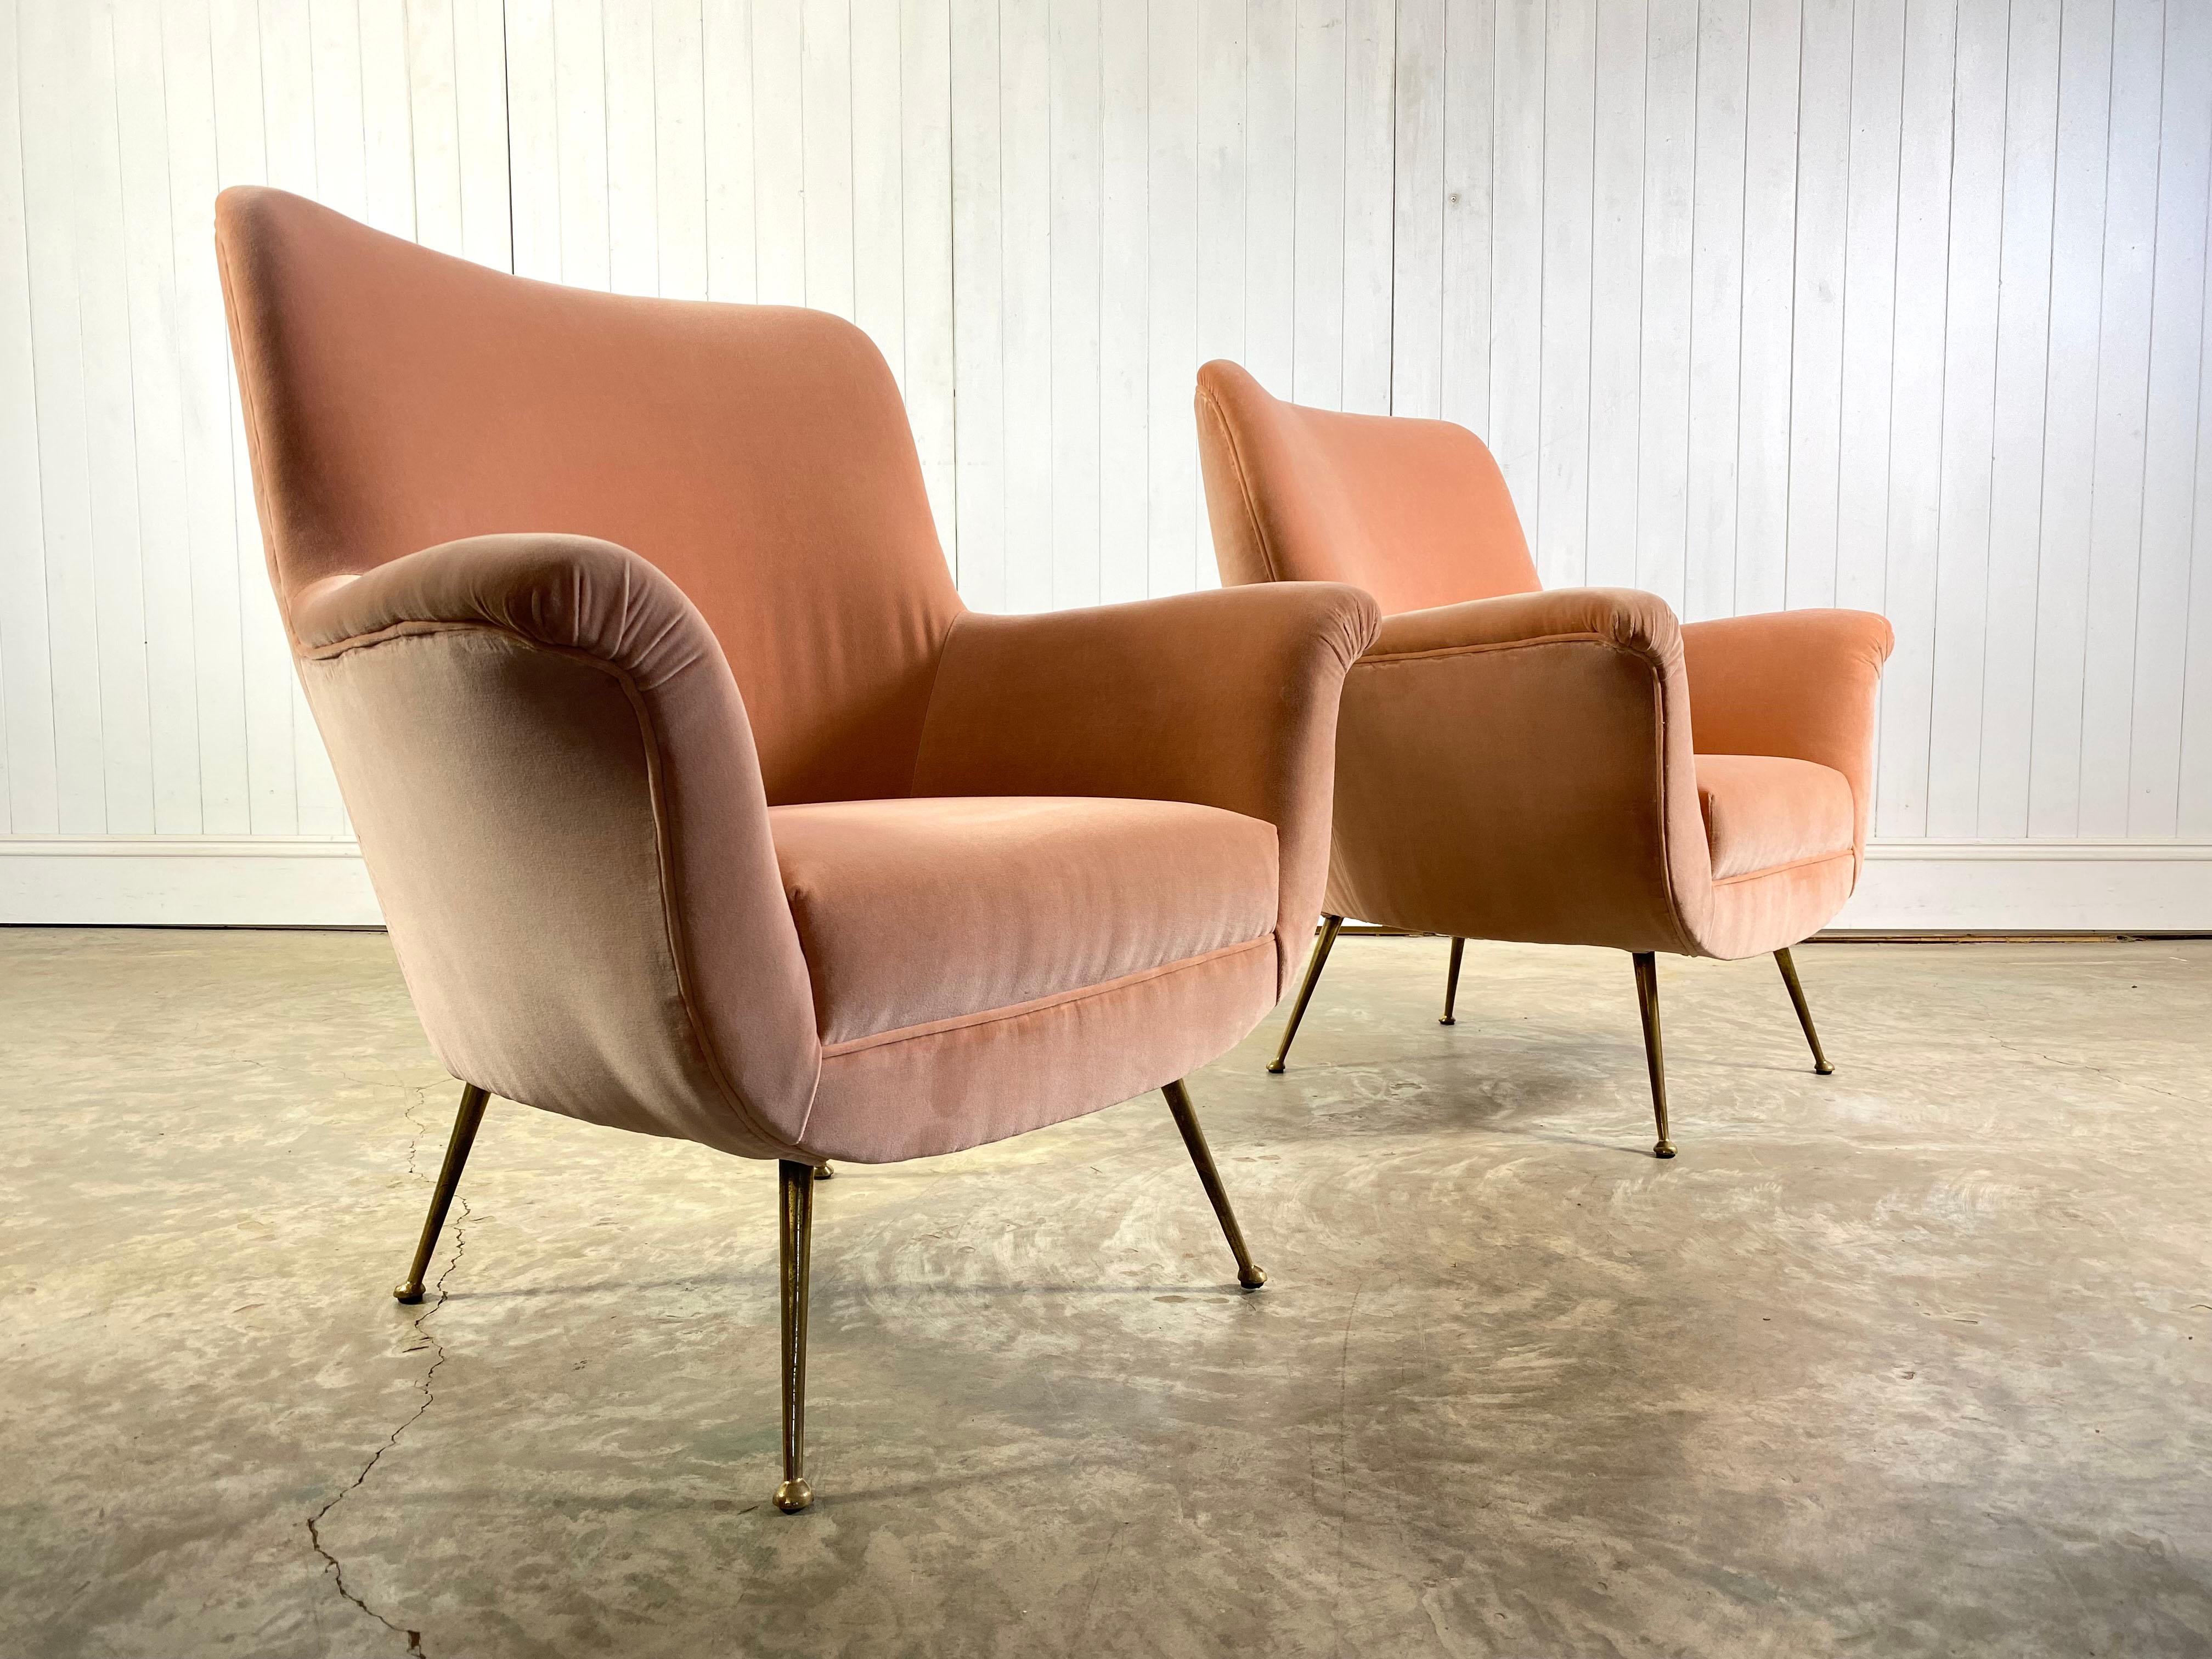 CIRCA 1950 wurde dieser atemberaubende rosafarbene Sessel aus der Mitte des Jahrhunderts in Italien hergestellt.

Es wurde komplett neu gepolstert in dieser fantastischen Farbe und die Beine sind original in Messing mit etwas Patina.

Eine